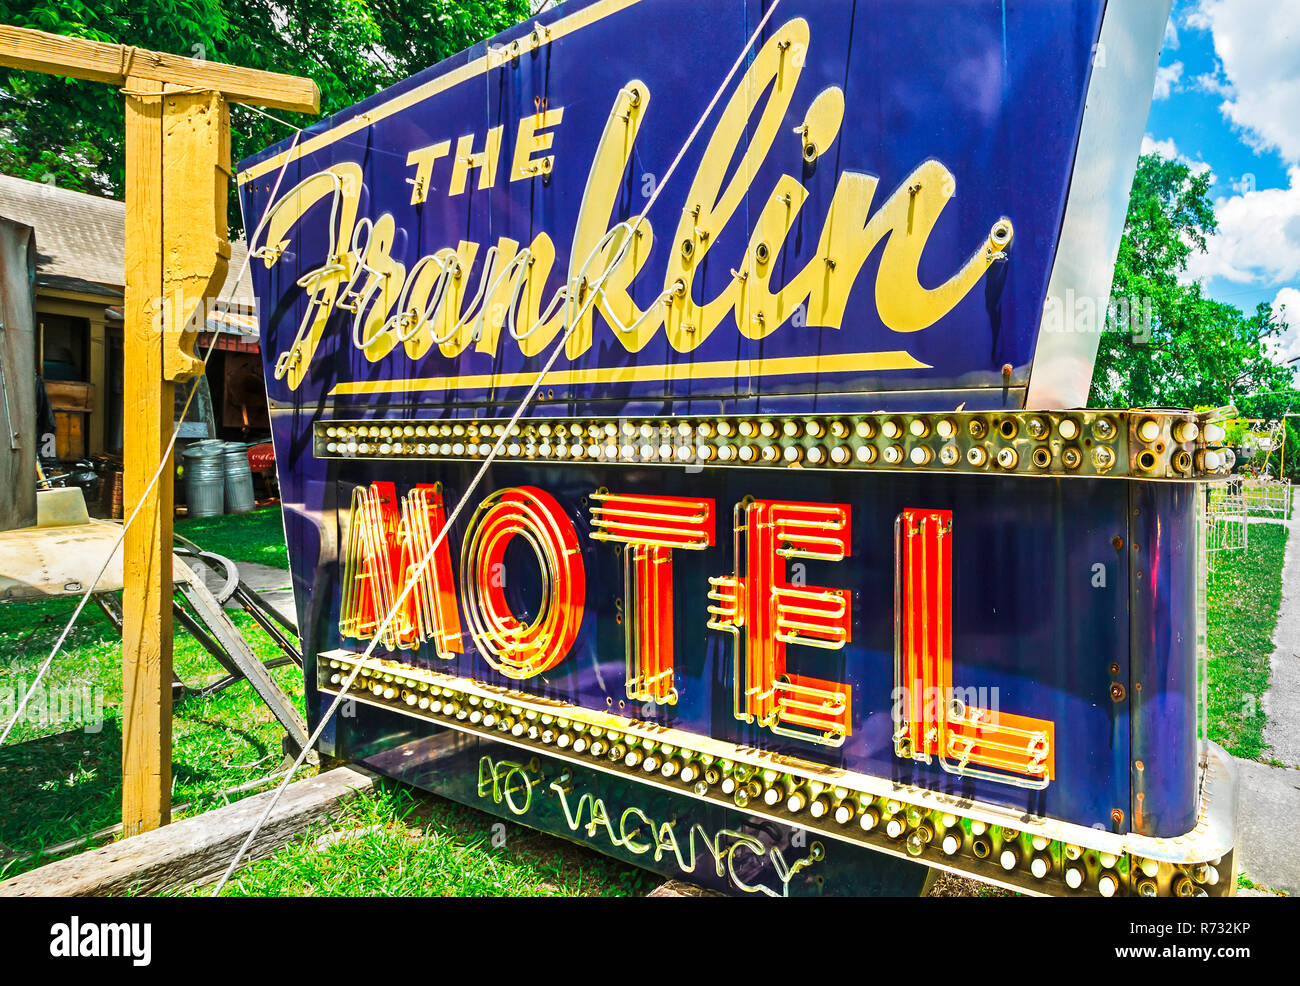 Un signe de Franklin Motel se trouve sur la pelouse à Biggar's Antiques de Chamblee, Géorgie, 10 juin 2014. La boutique familiale a été fondée à New Y Banque D'Images